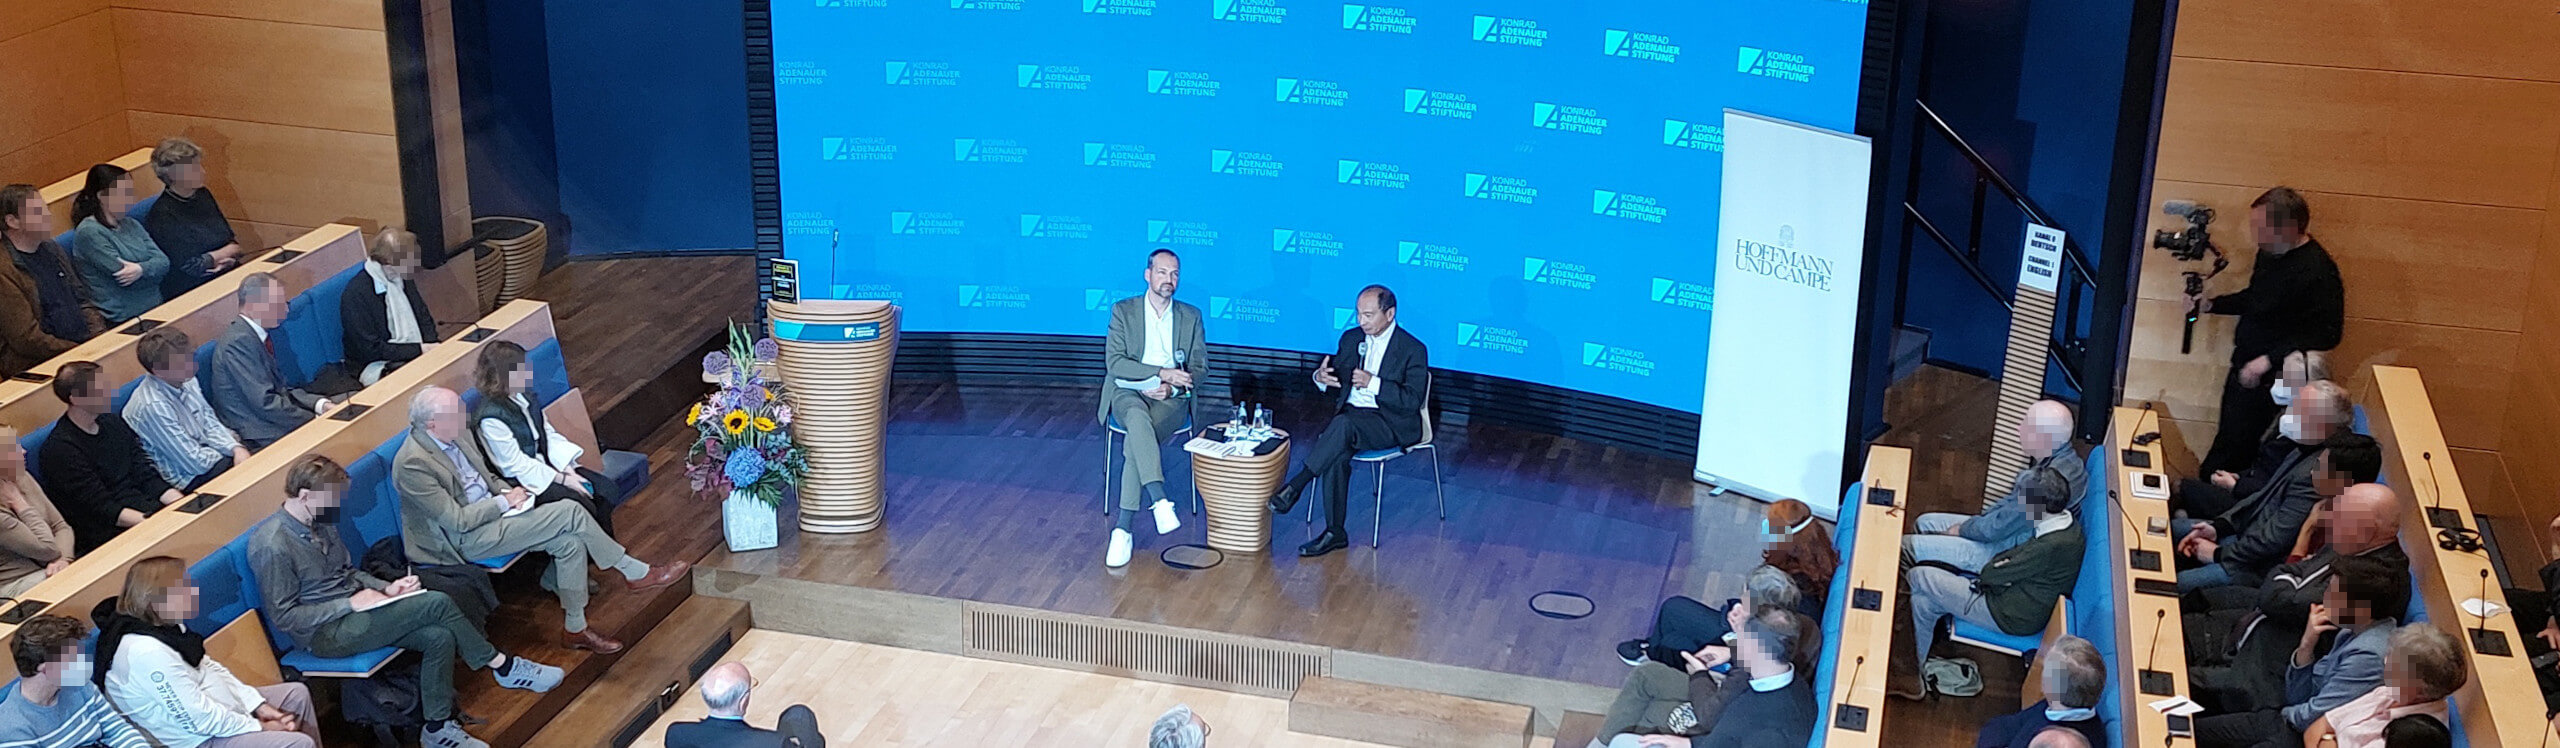 Dr. Francis Fukuyama at the Konrad-Adenauer-Stiftung